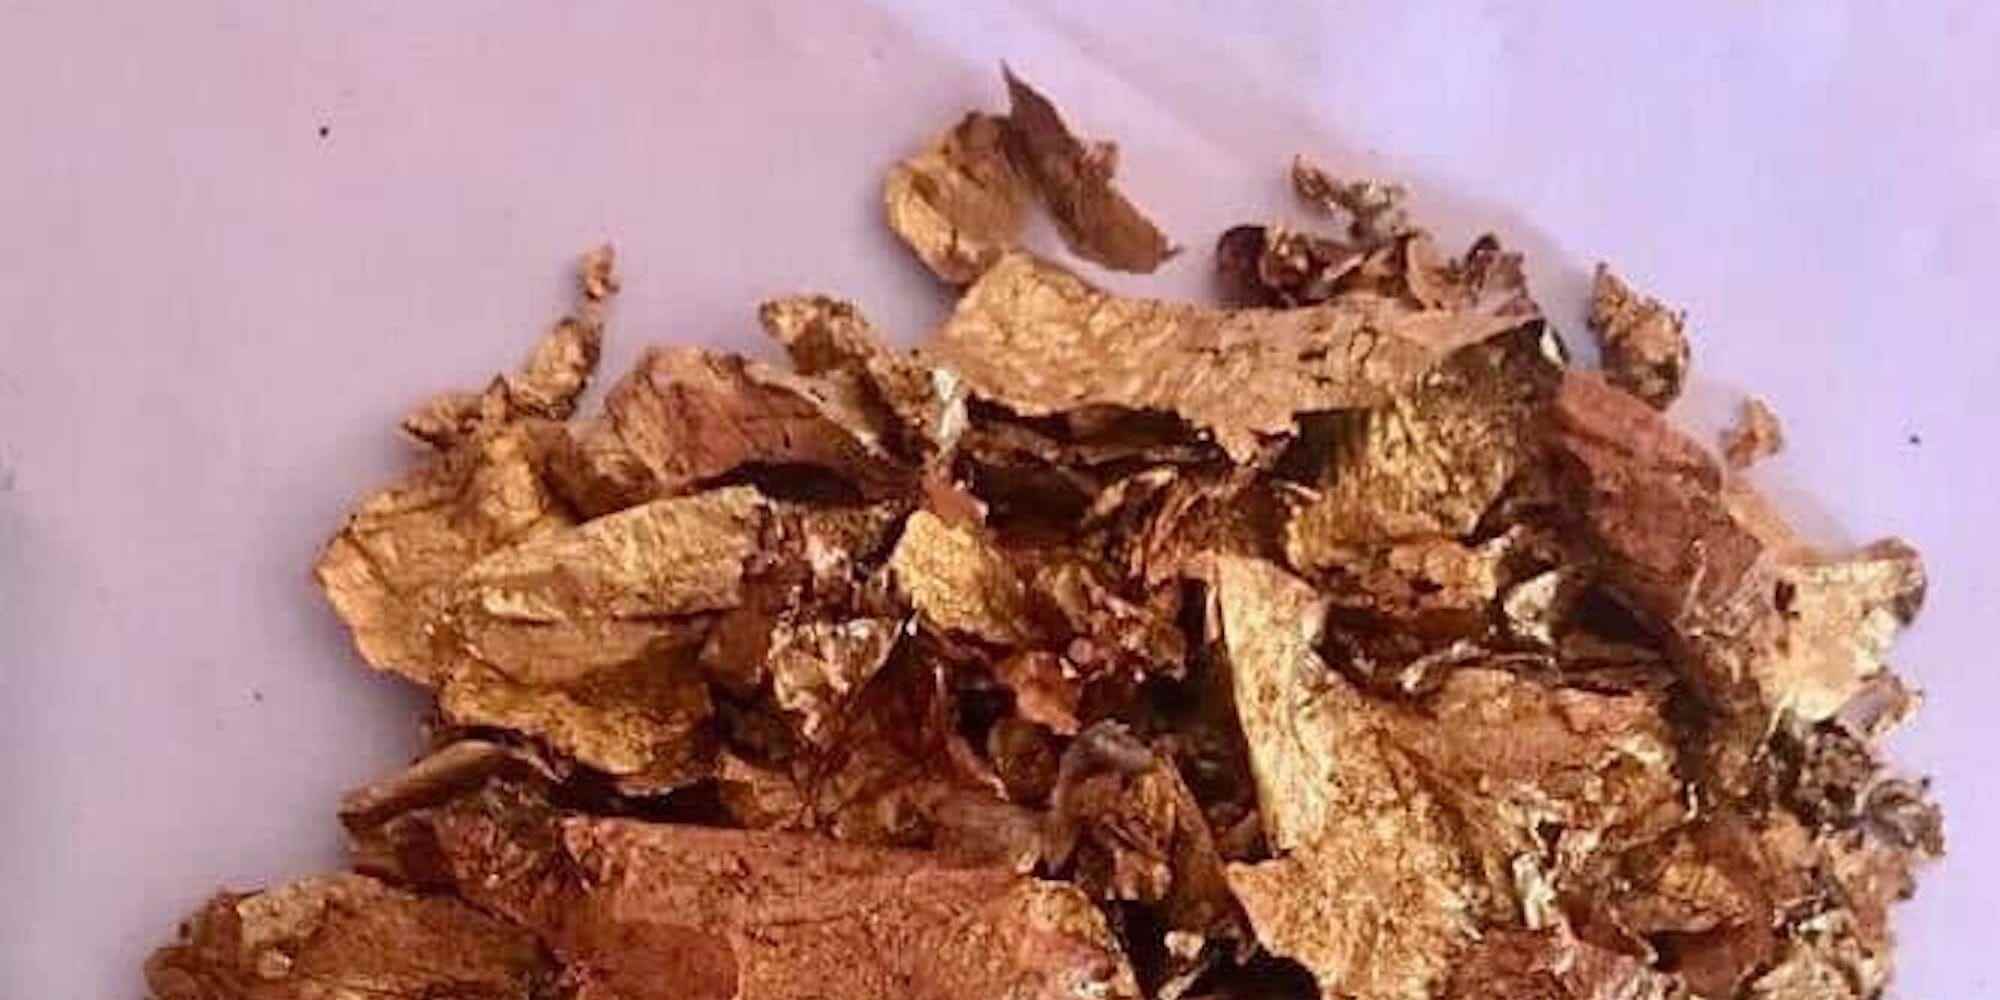 Goldflocken, die in der Nähe der Leichen gefunden wurden, werden gezeigt.